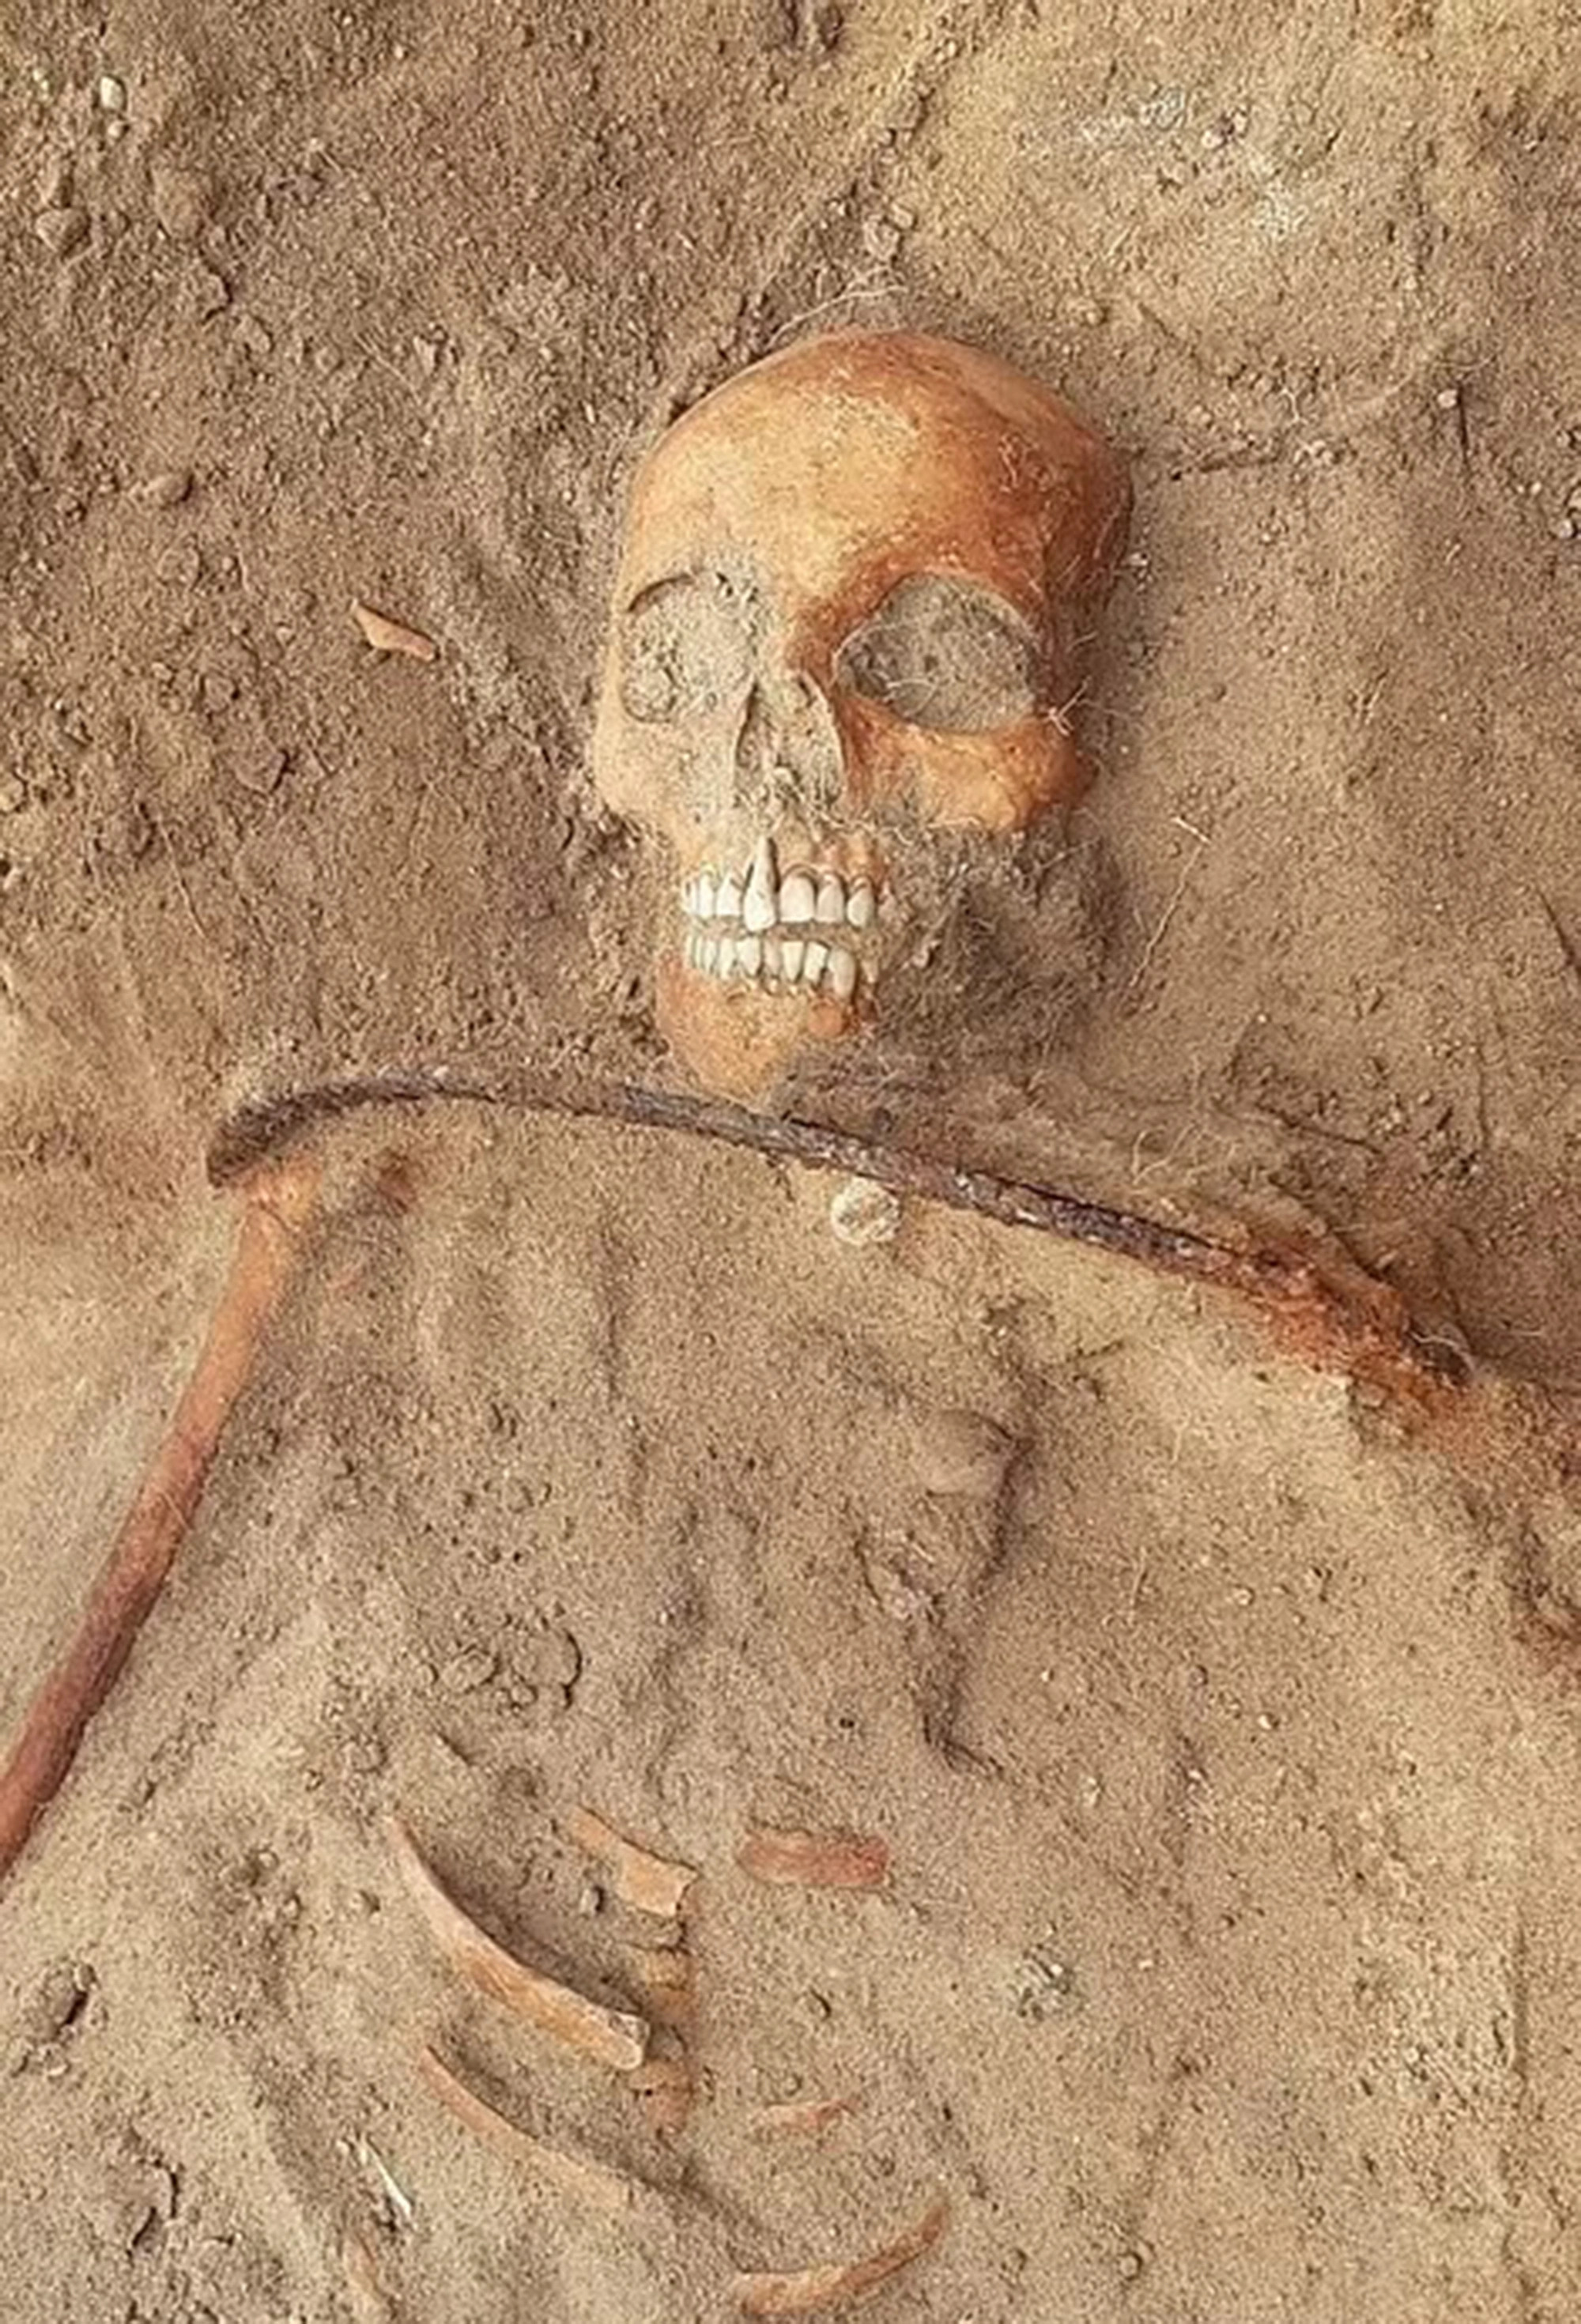 Wampir szkielet znaleziony w Polsce